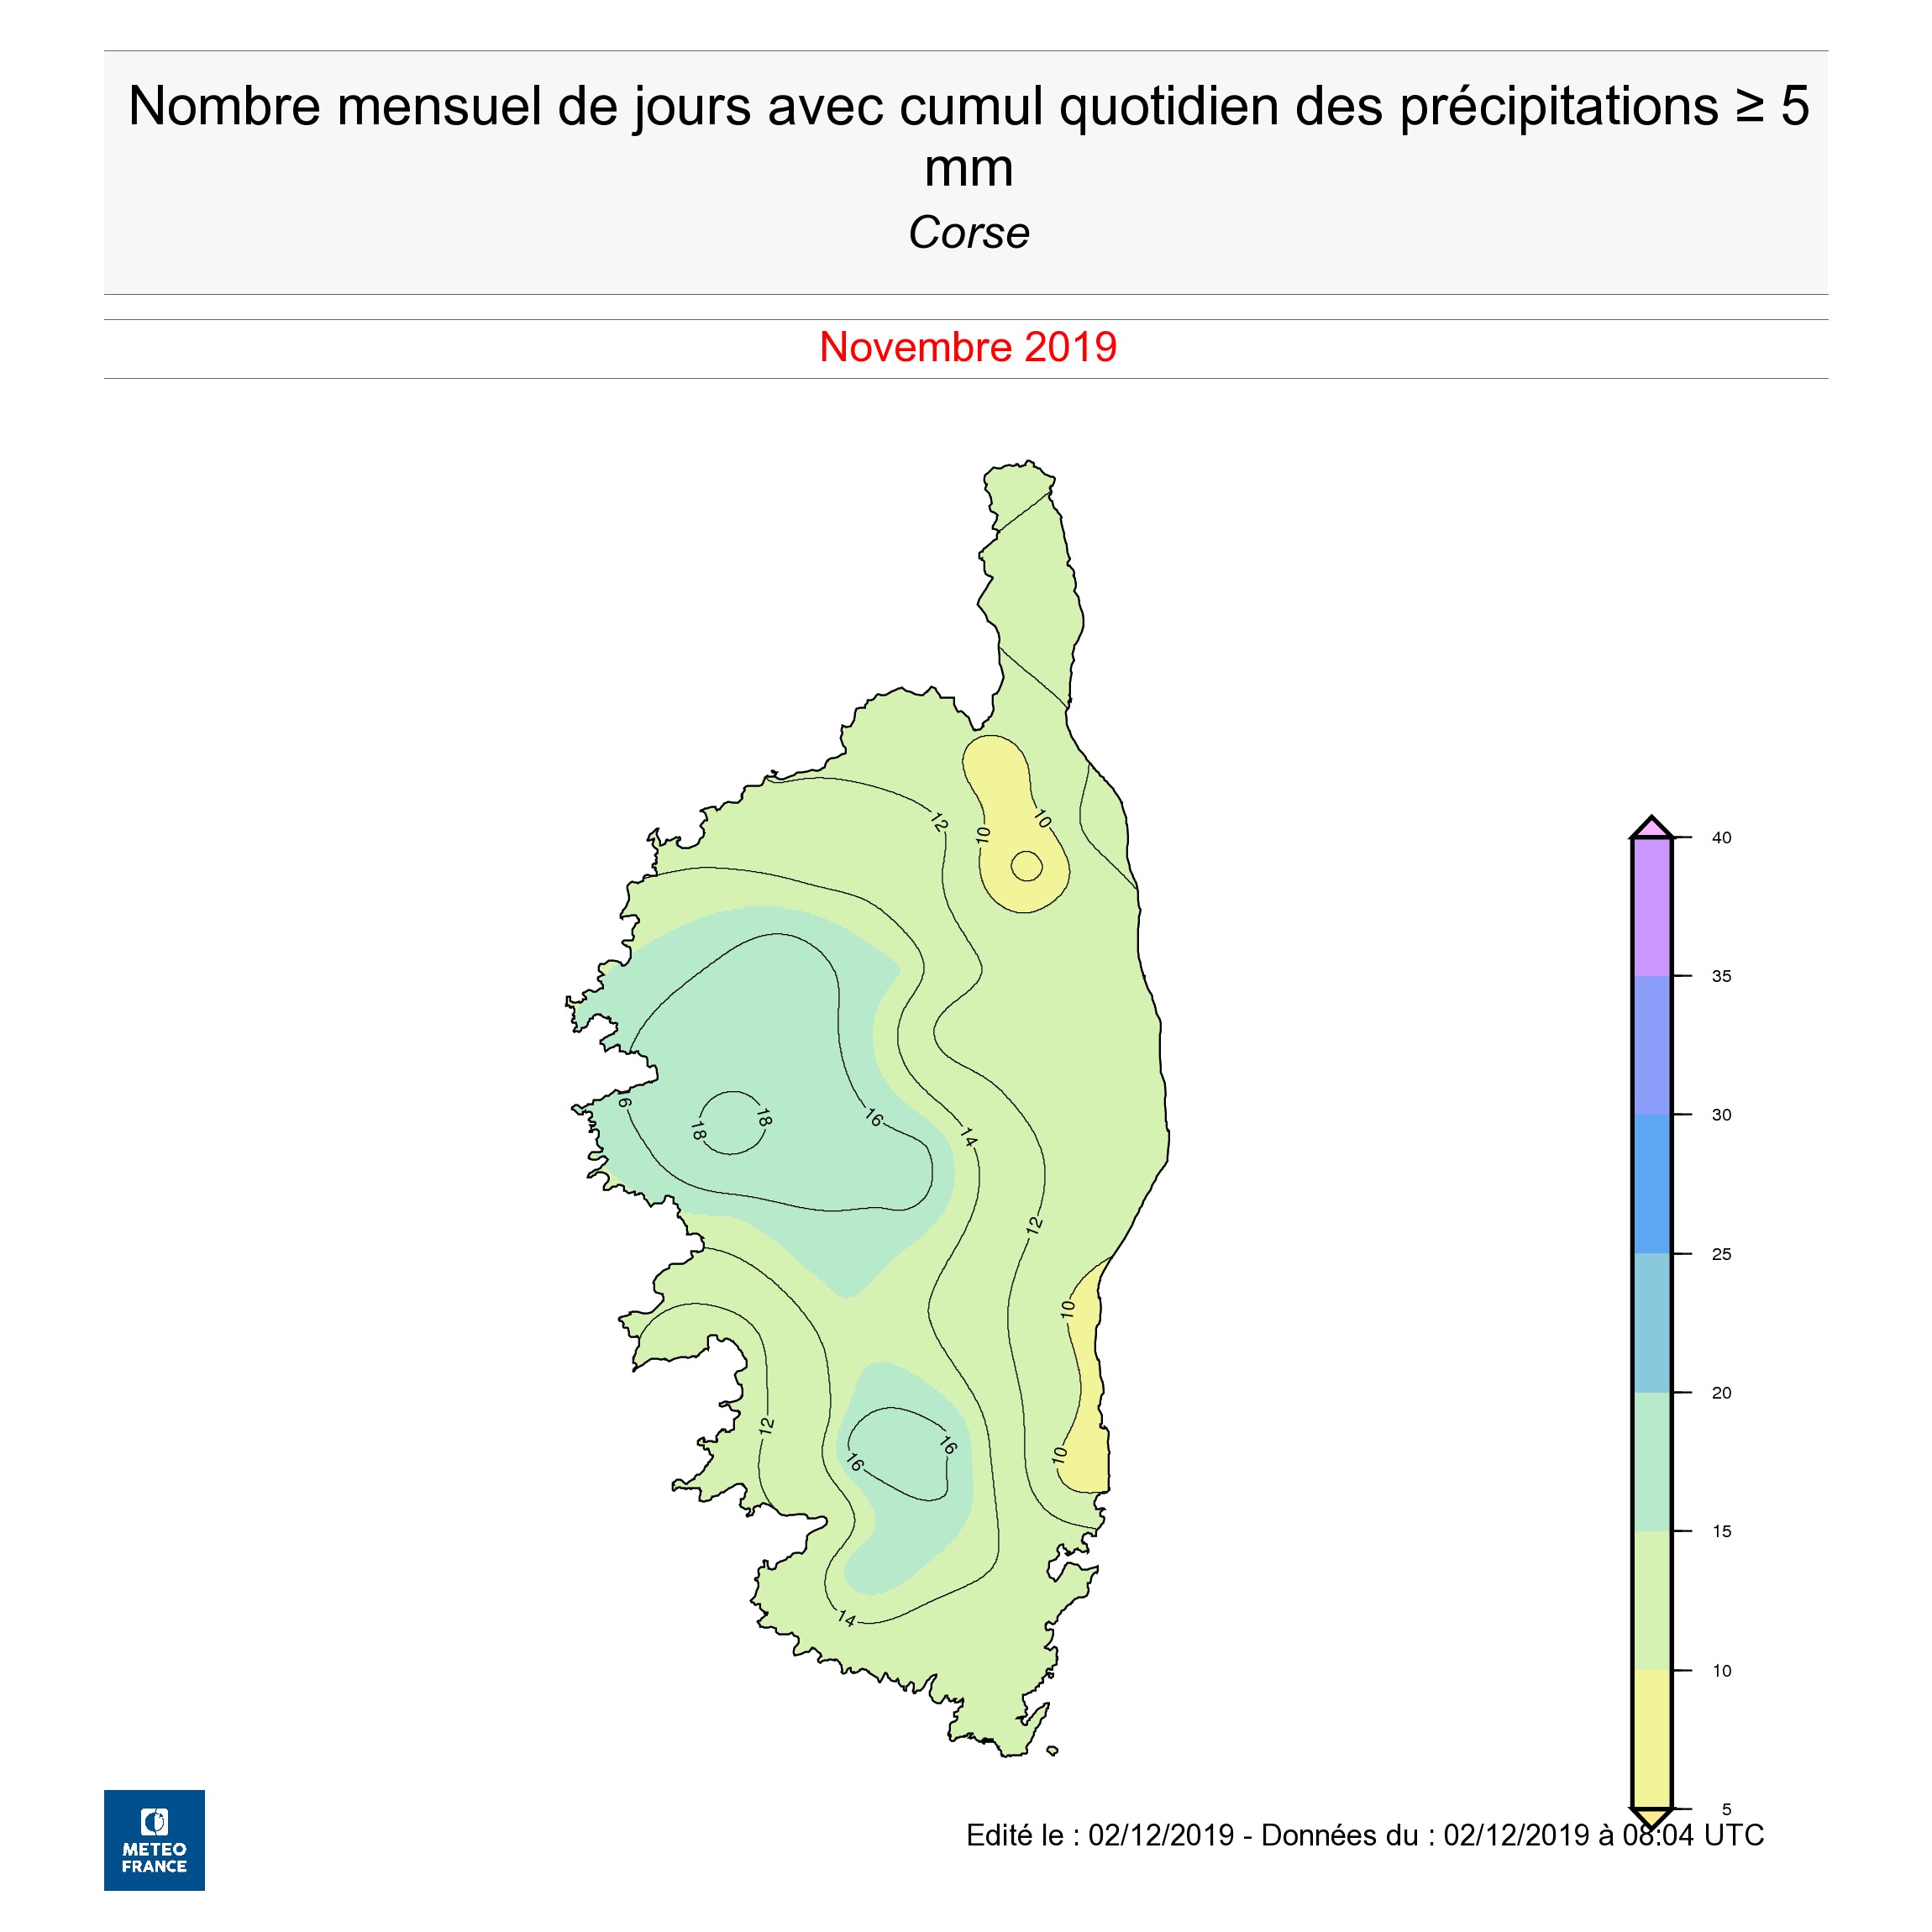 Météo : Des records de pluie battus en novembre en Corse